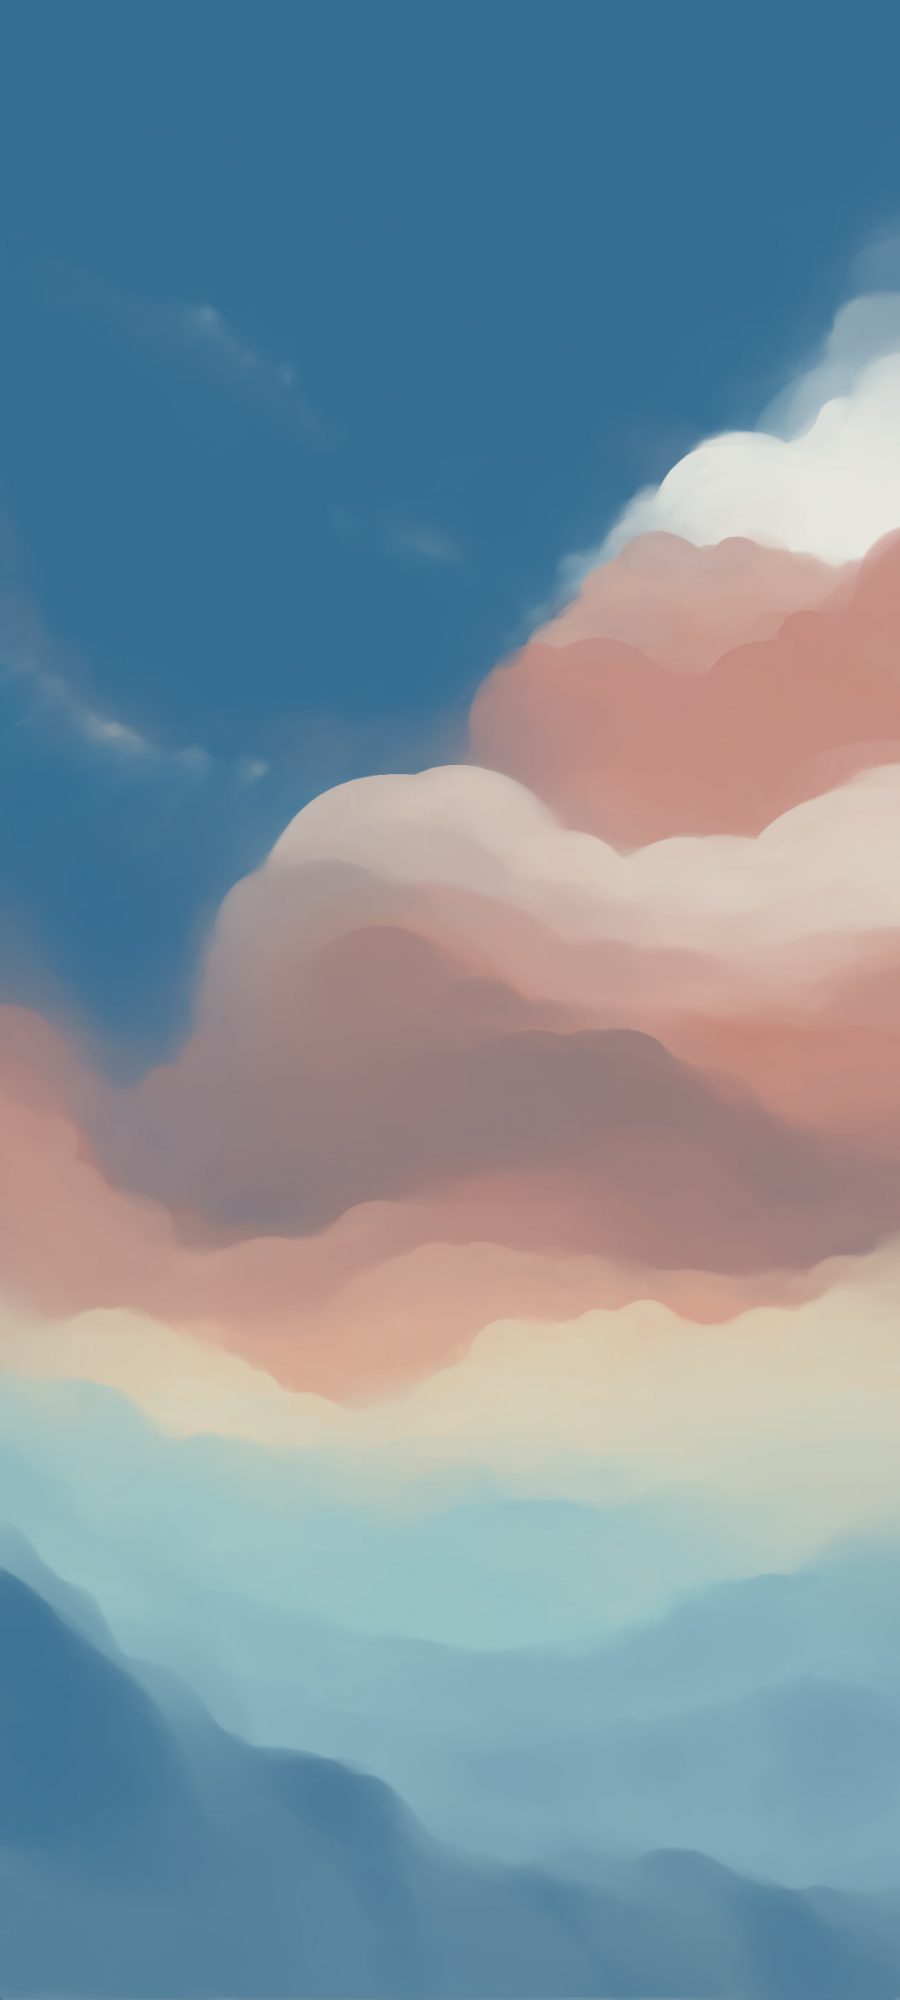 蓝色天空 云 风景 设计 手机壁纸